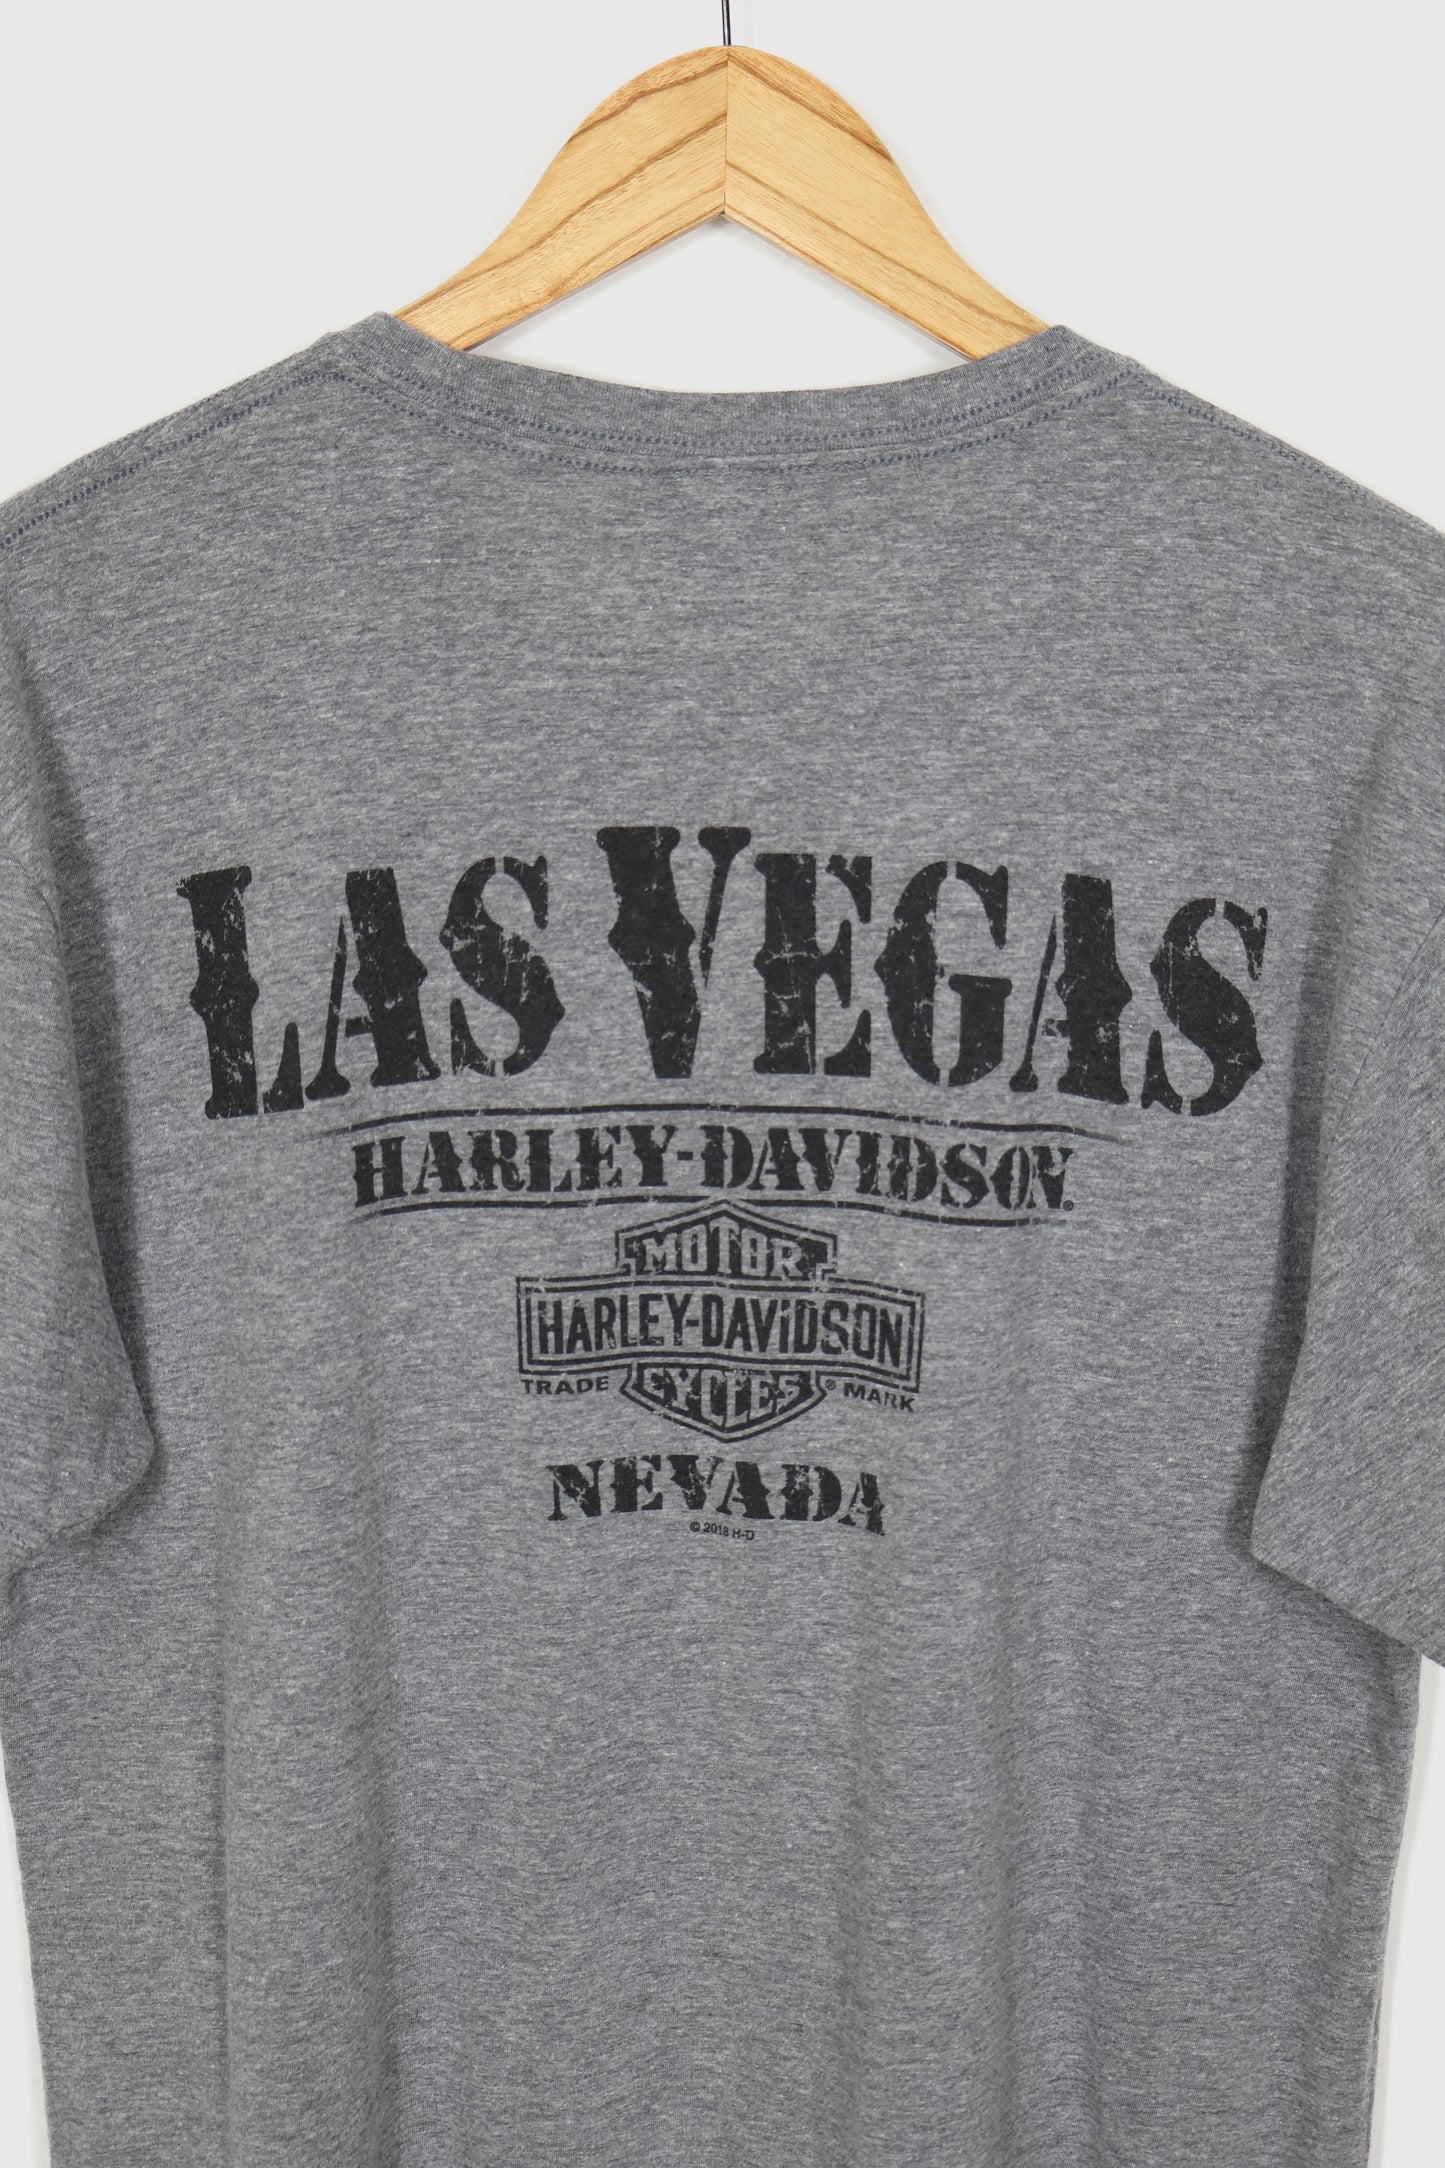 Harley Davidson Las Vegas Tee